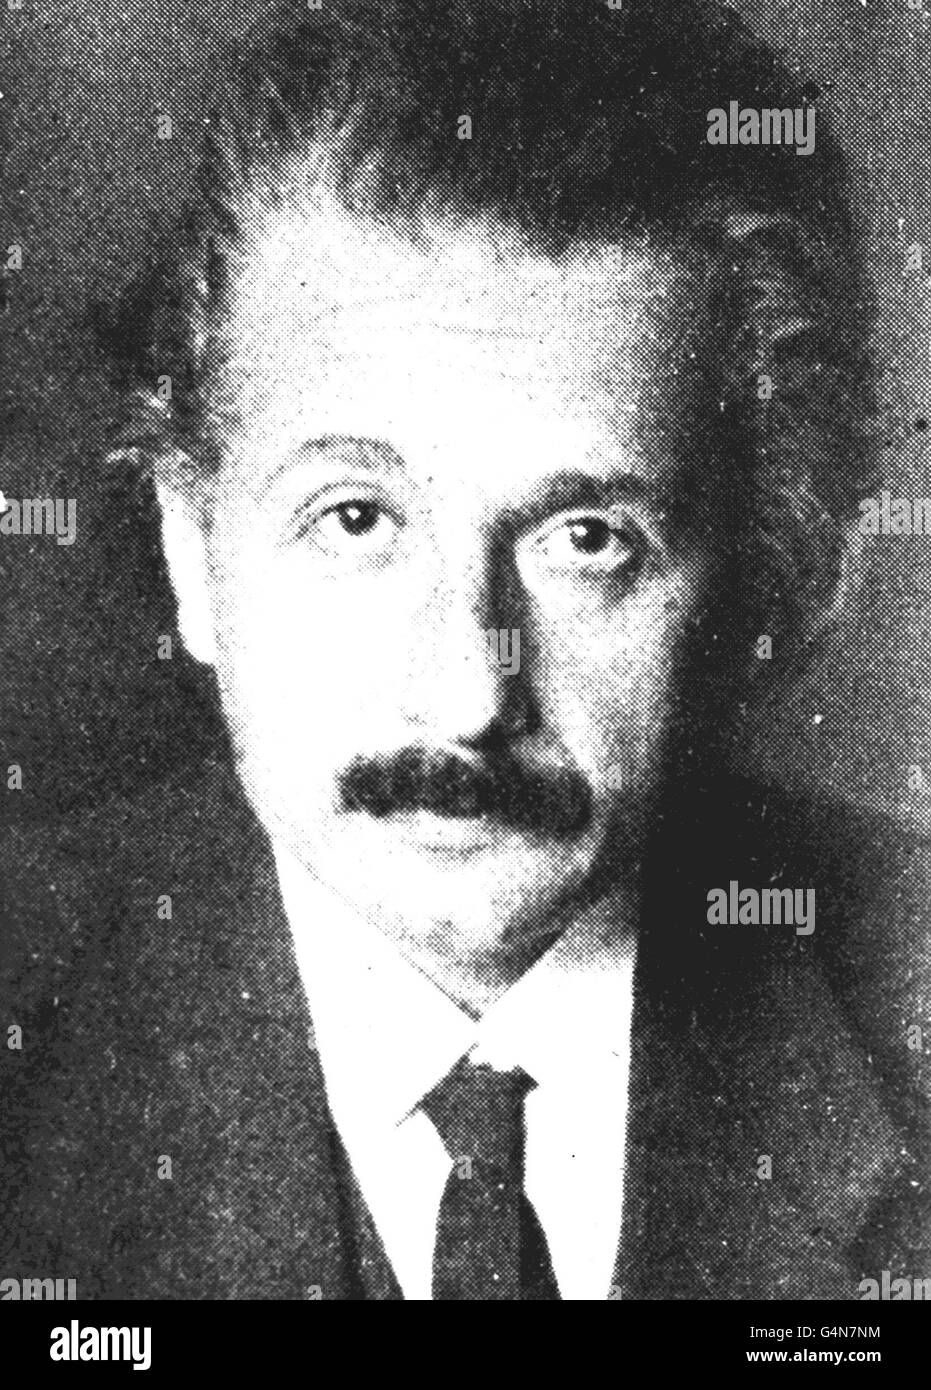 Albert Einstein/1920. Professor Albert Einstein in 1920. Stock Photo